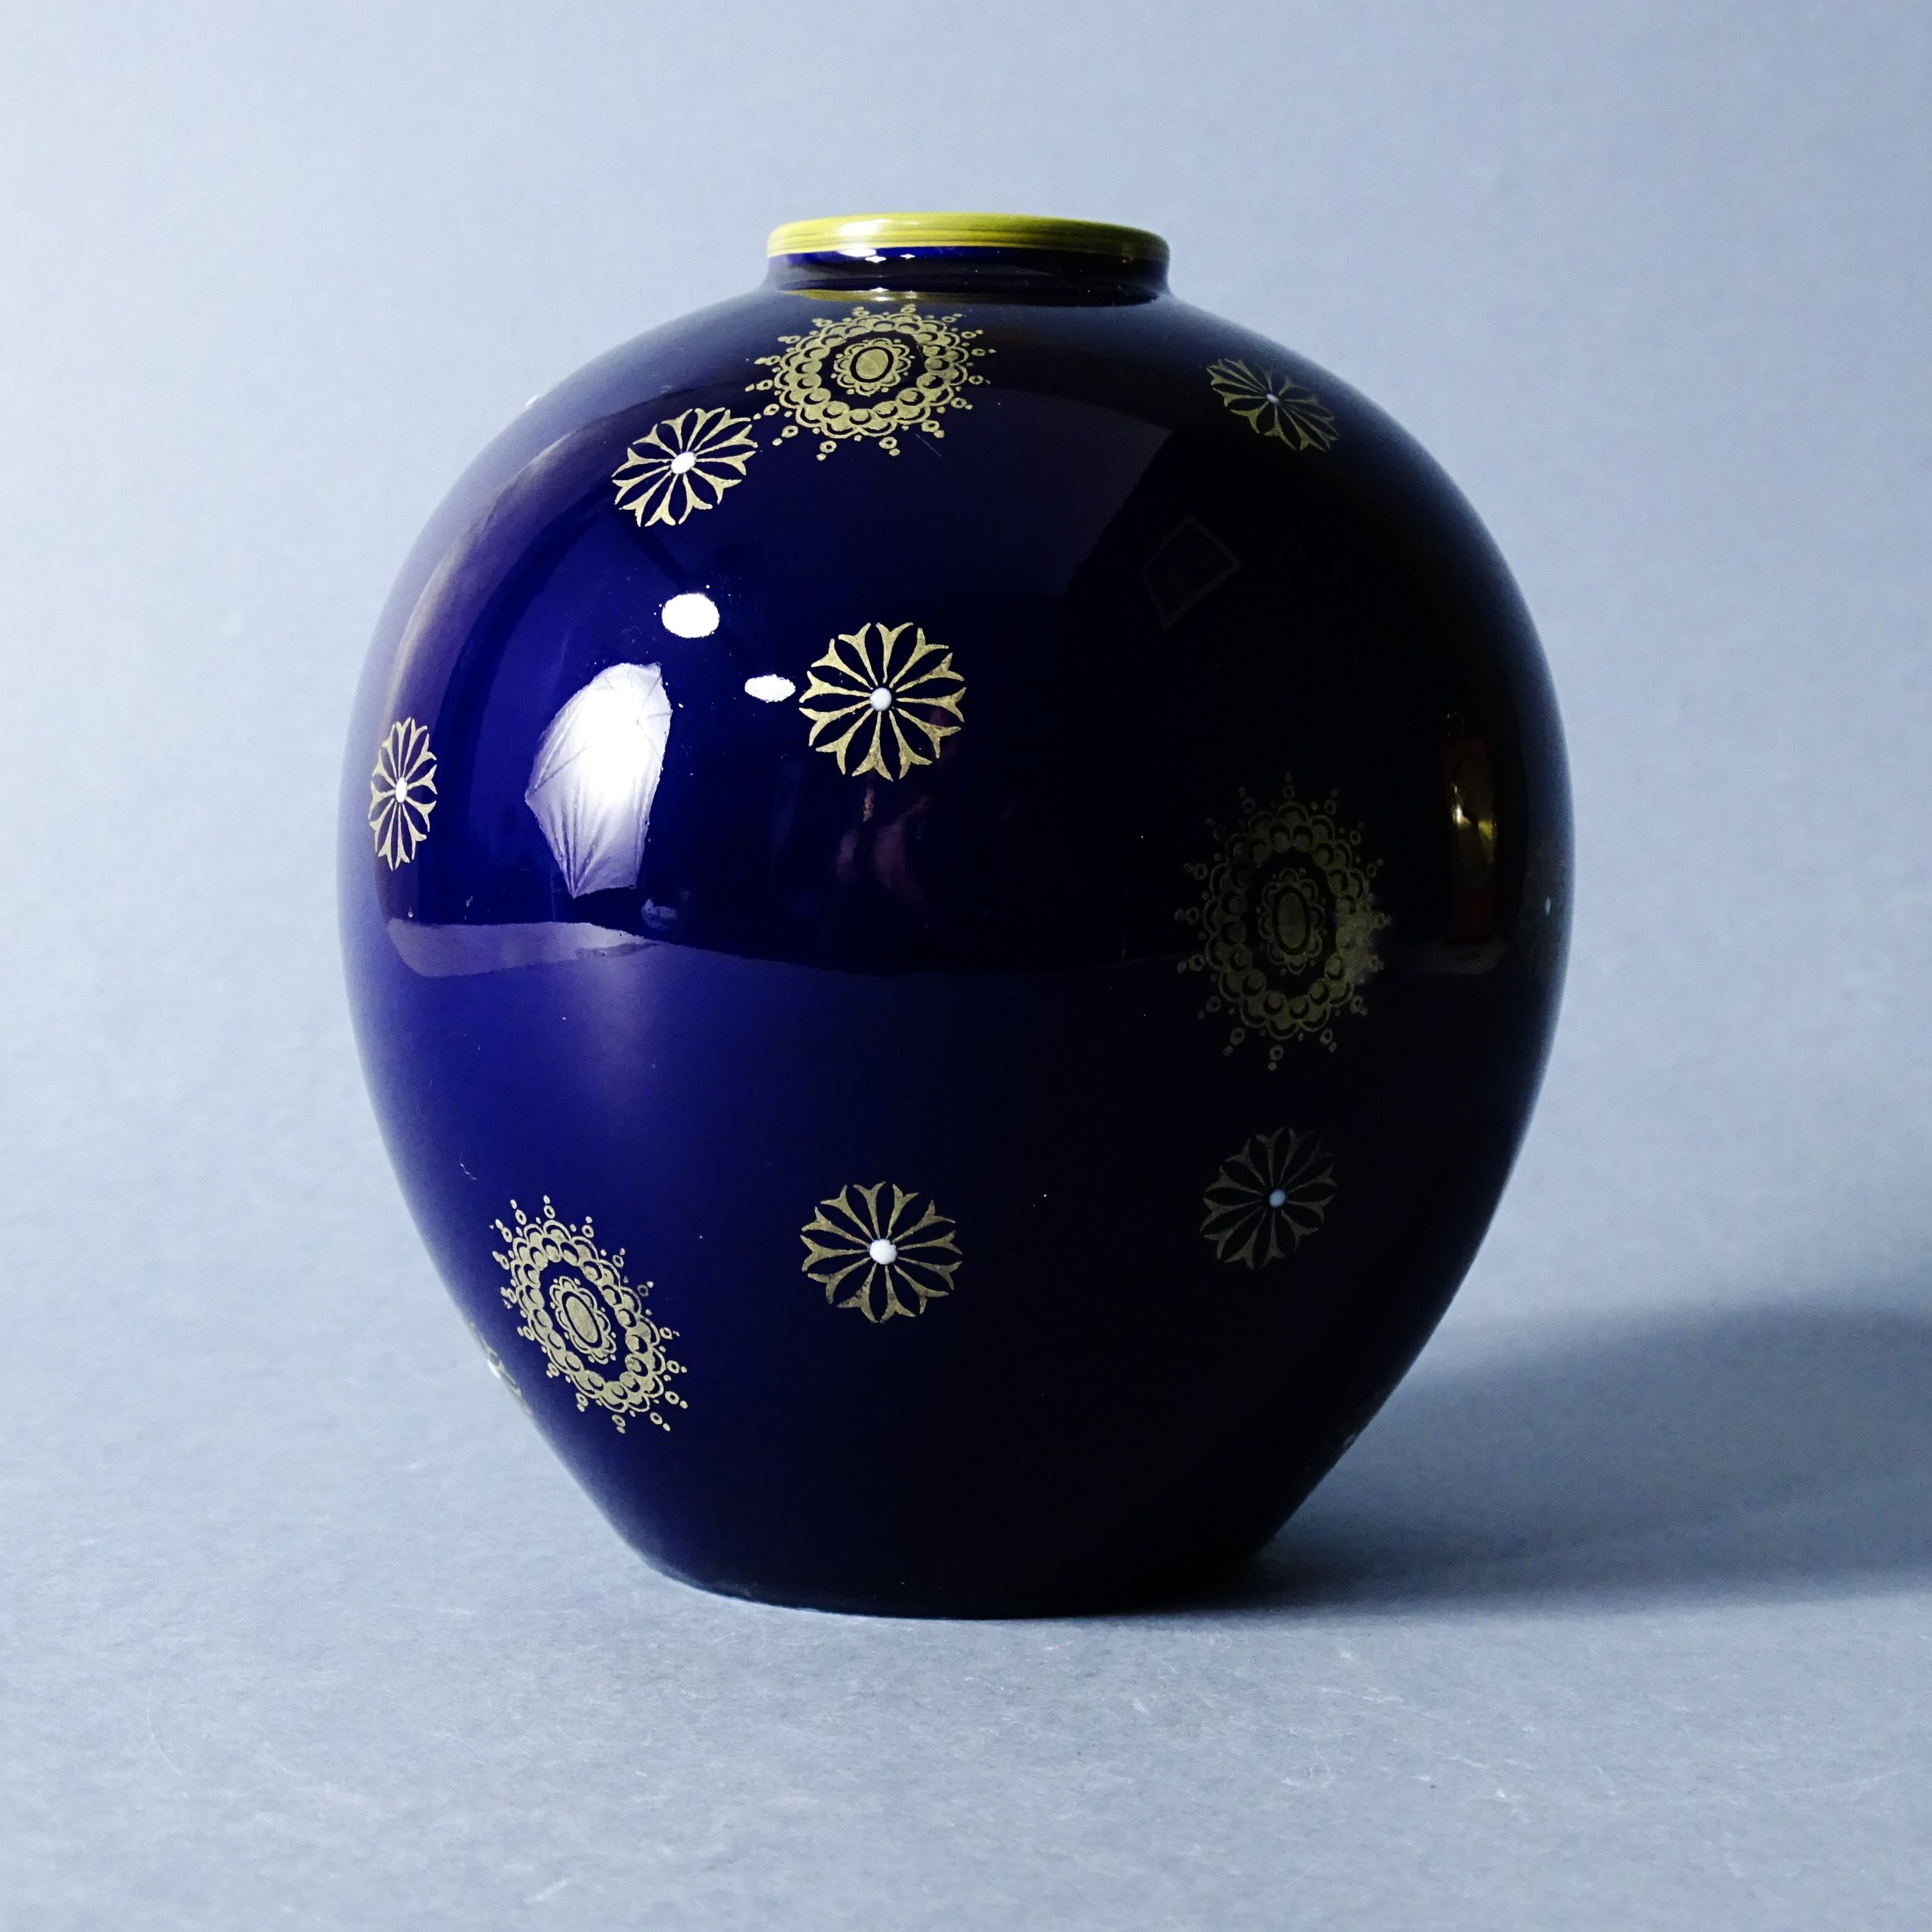 piękny koblatowy wazon porcelanowy lata 60/70-te